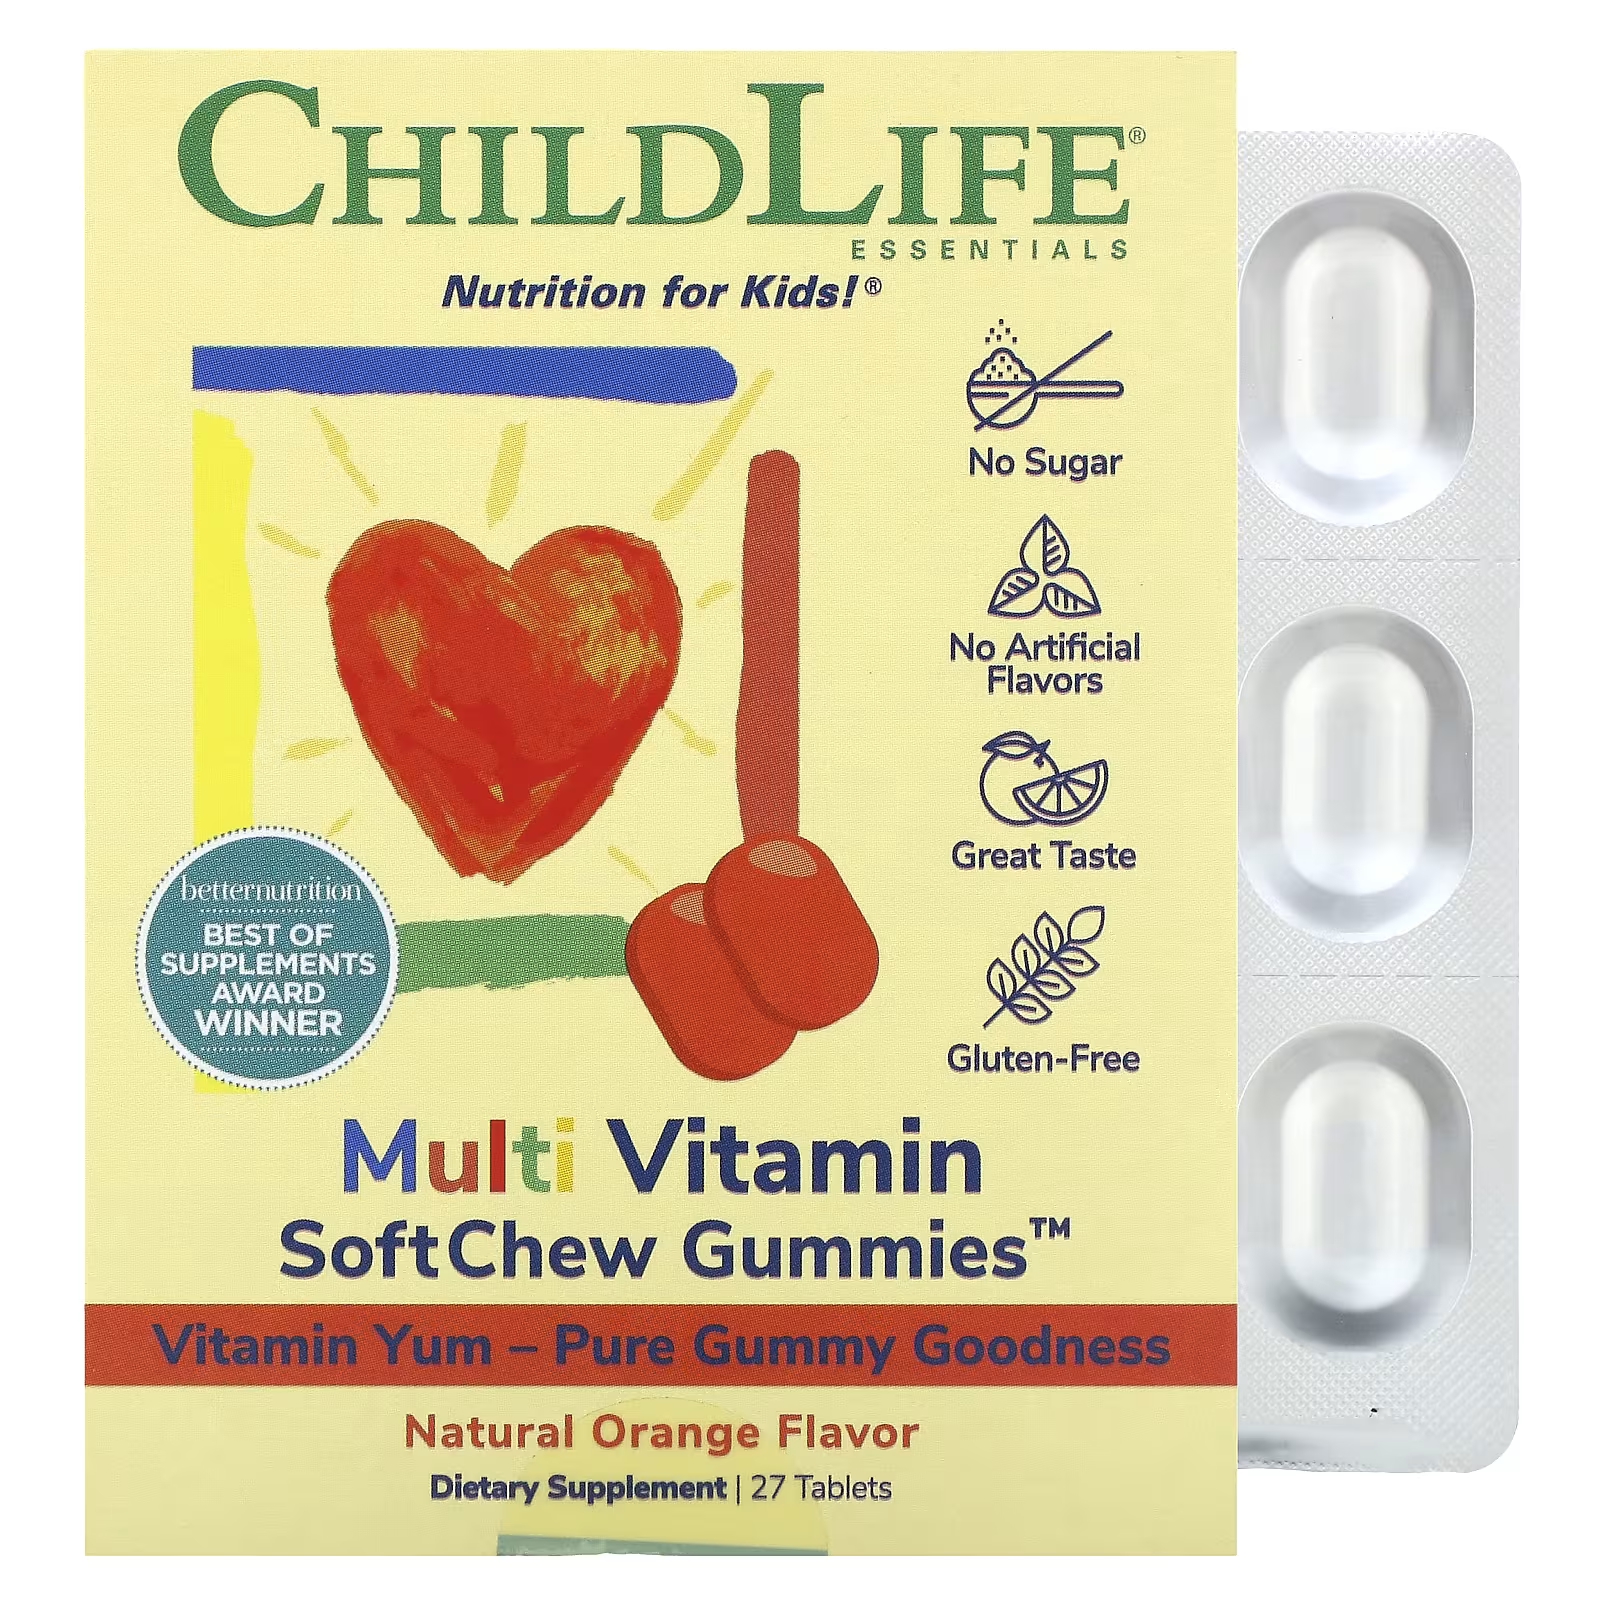 Мультивитаминные жевательные конфеты ChildLife Essentials SoftChew с натуральным апельсином, 27 таблеток kids elderberry super immune softchew gummies natural berry 27 таблеток childlife essentials